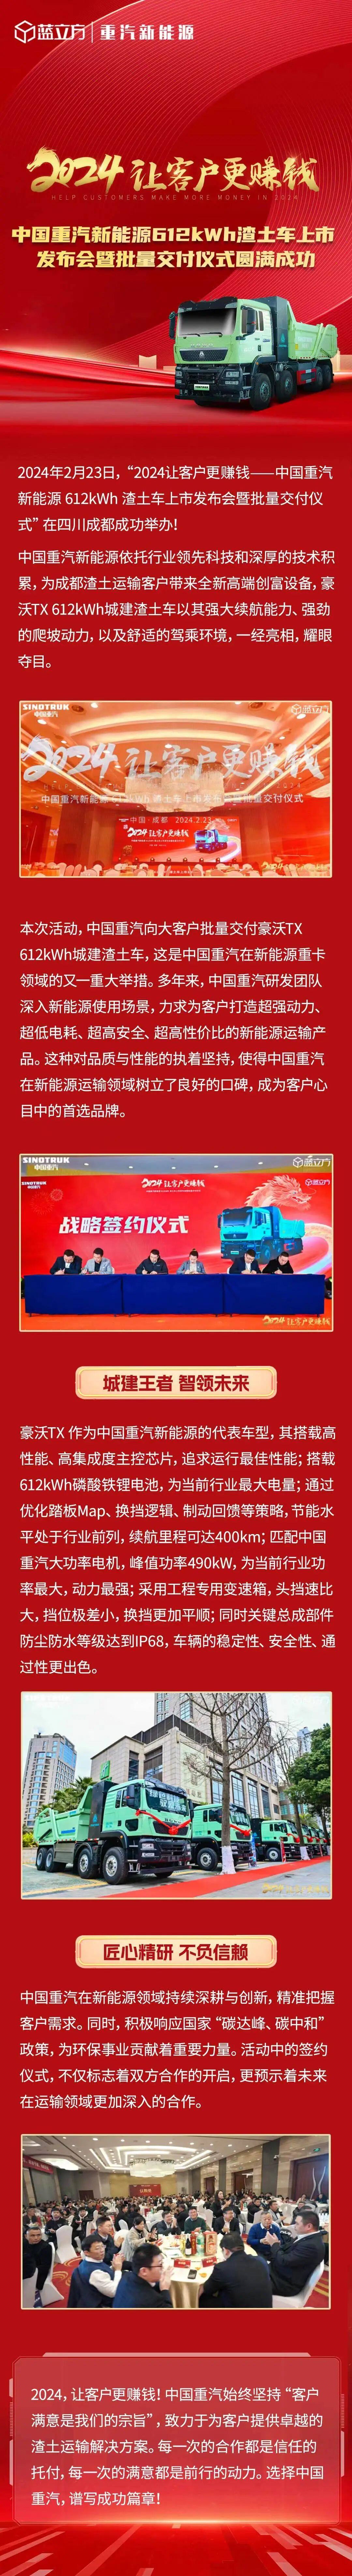 中国重汽新能源612kWh渣土车上市宣告会暨批量交付仪式在成都举行